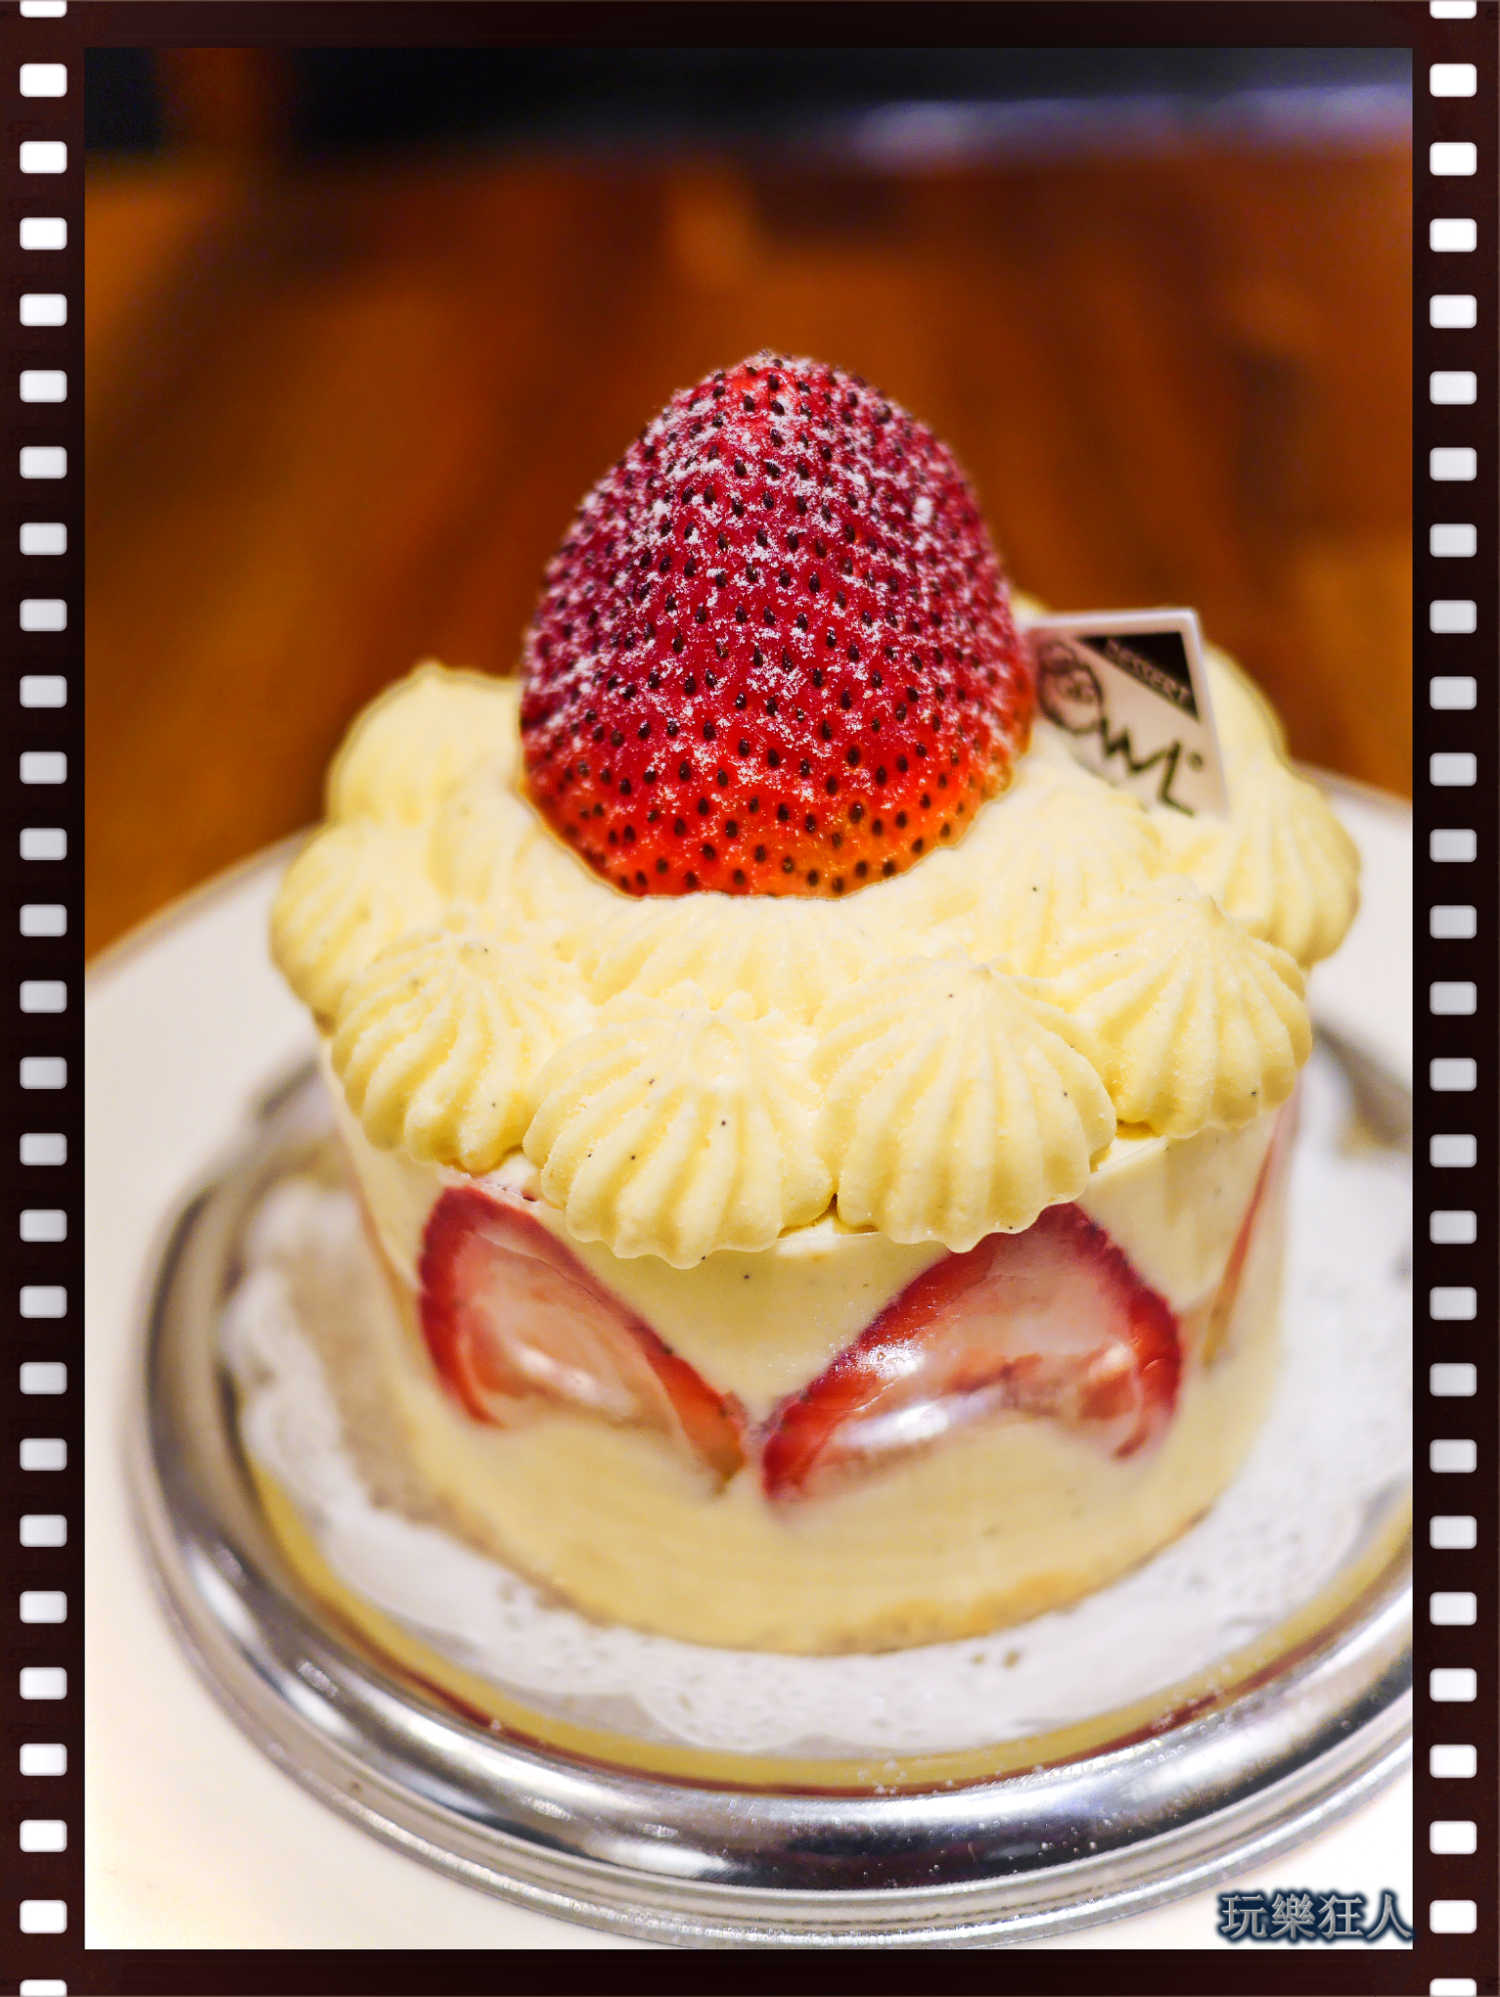 『貓頭鷹法式手工甜點 』咖啡廳-法式草莓蛋糕